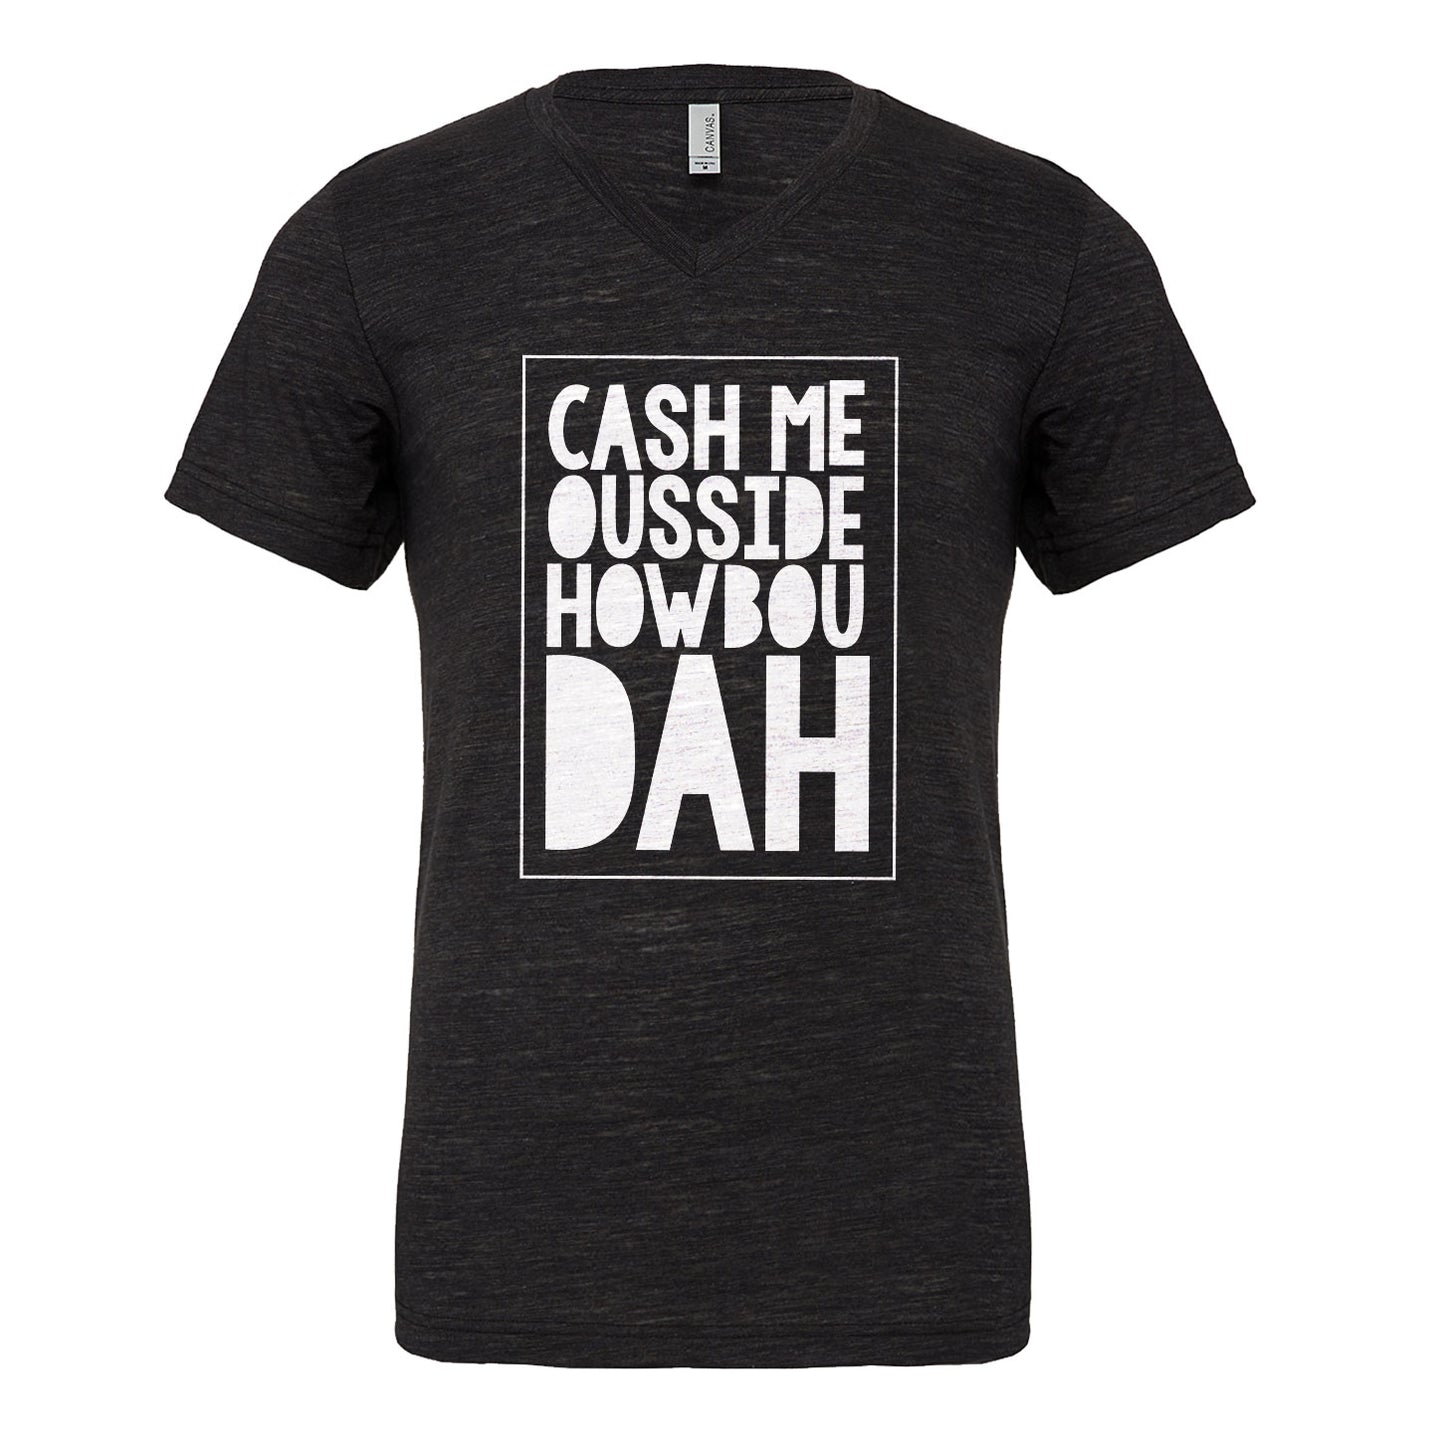 Mens Cash Me Ousside How Bow Dah Vneck T-shirt